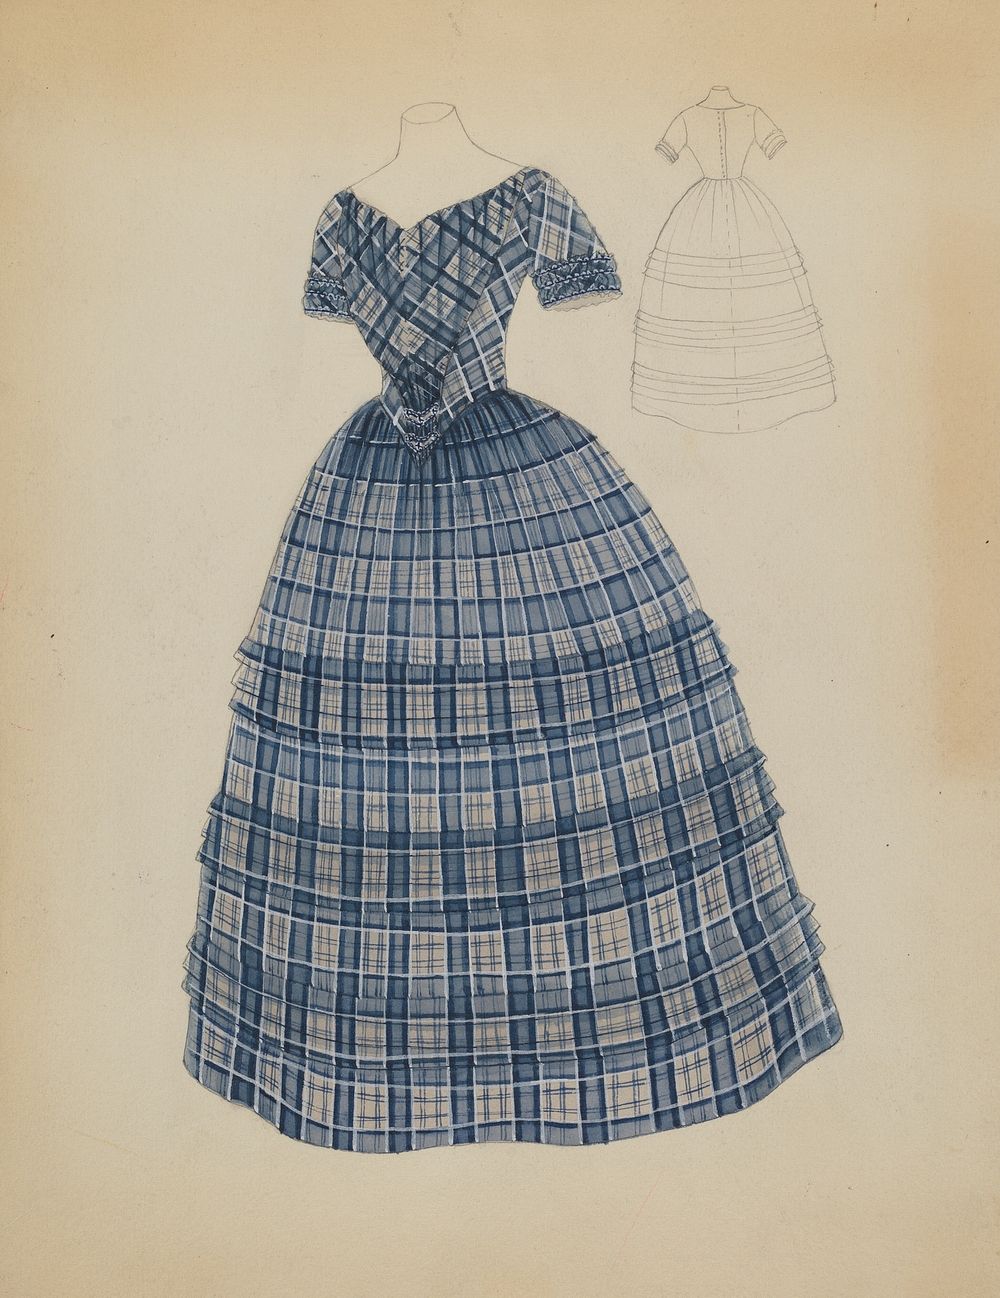 Dress (c. 1936) by Bessie Forman.  